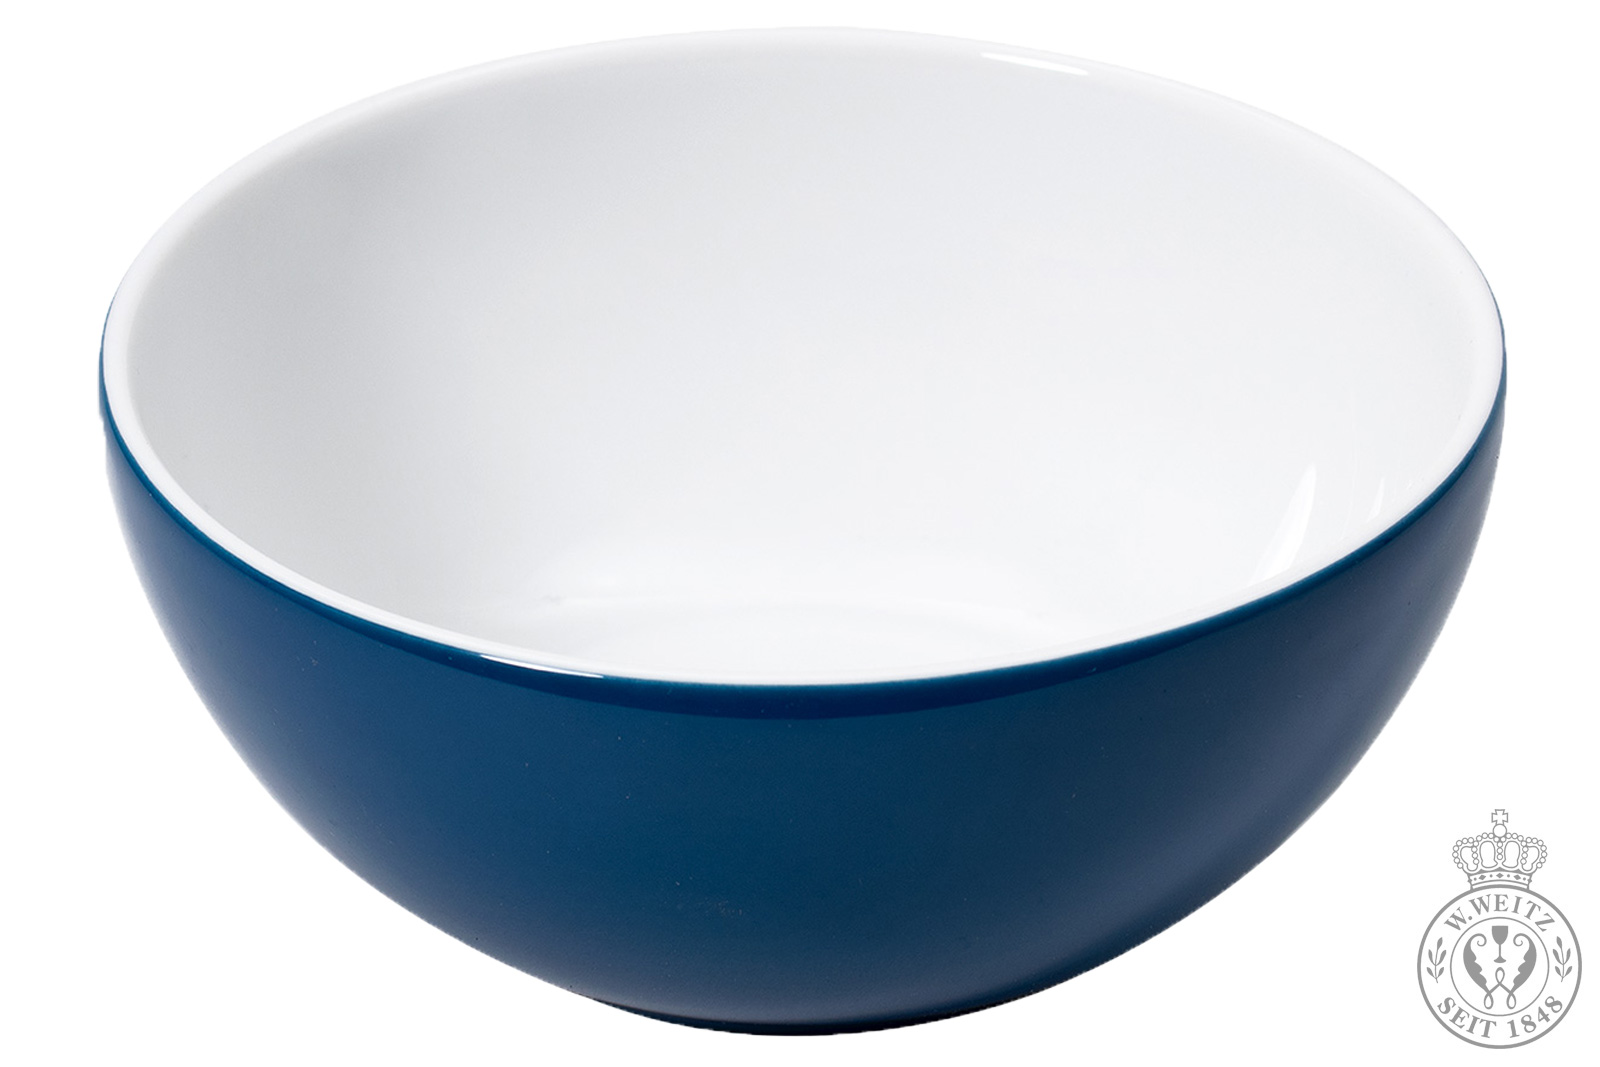 Dibbern Solid Color pazifikblau Schale 2,30ltr. 23cm